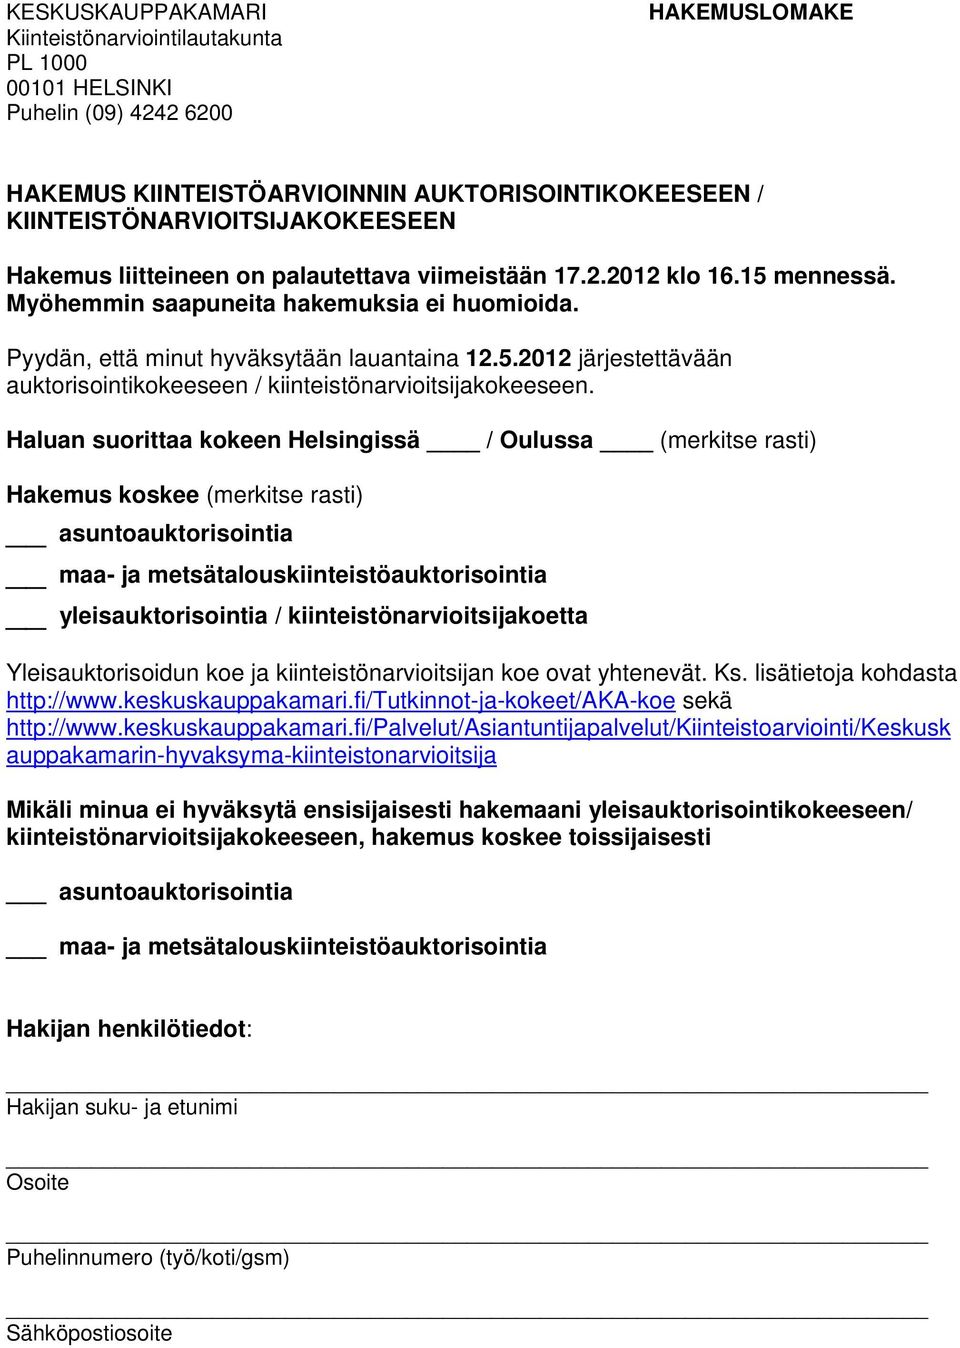 Haluan suorittaa kokeen Helsingissä / Oulussa (merkitse rasti) Hakemus koskee (merkitse rasti) asuntoauktorisointia maa- ja metsätalouskiinteistöauktorisointia yleisauktorisointia /